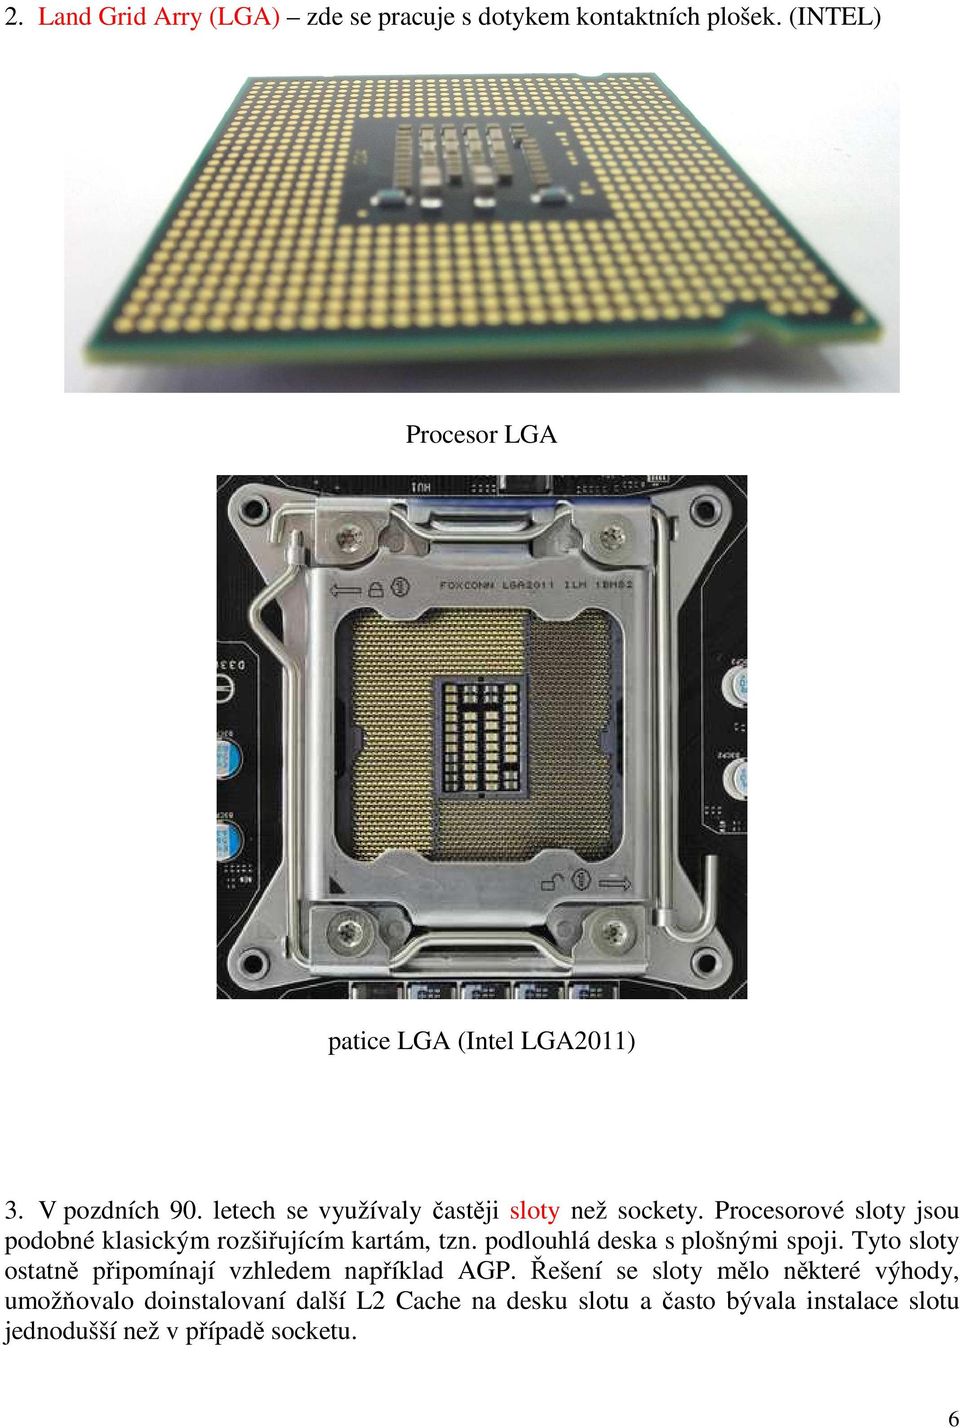 Procesorové sloty jsou podobné klasickým rozšiřujícím kartám, tzn. podlouhlá deska s plošnými spoji.